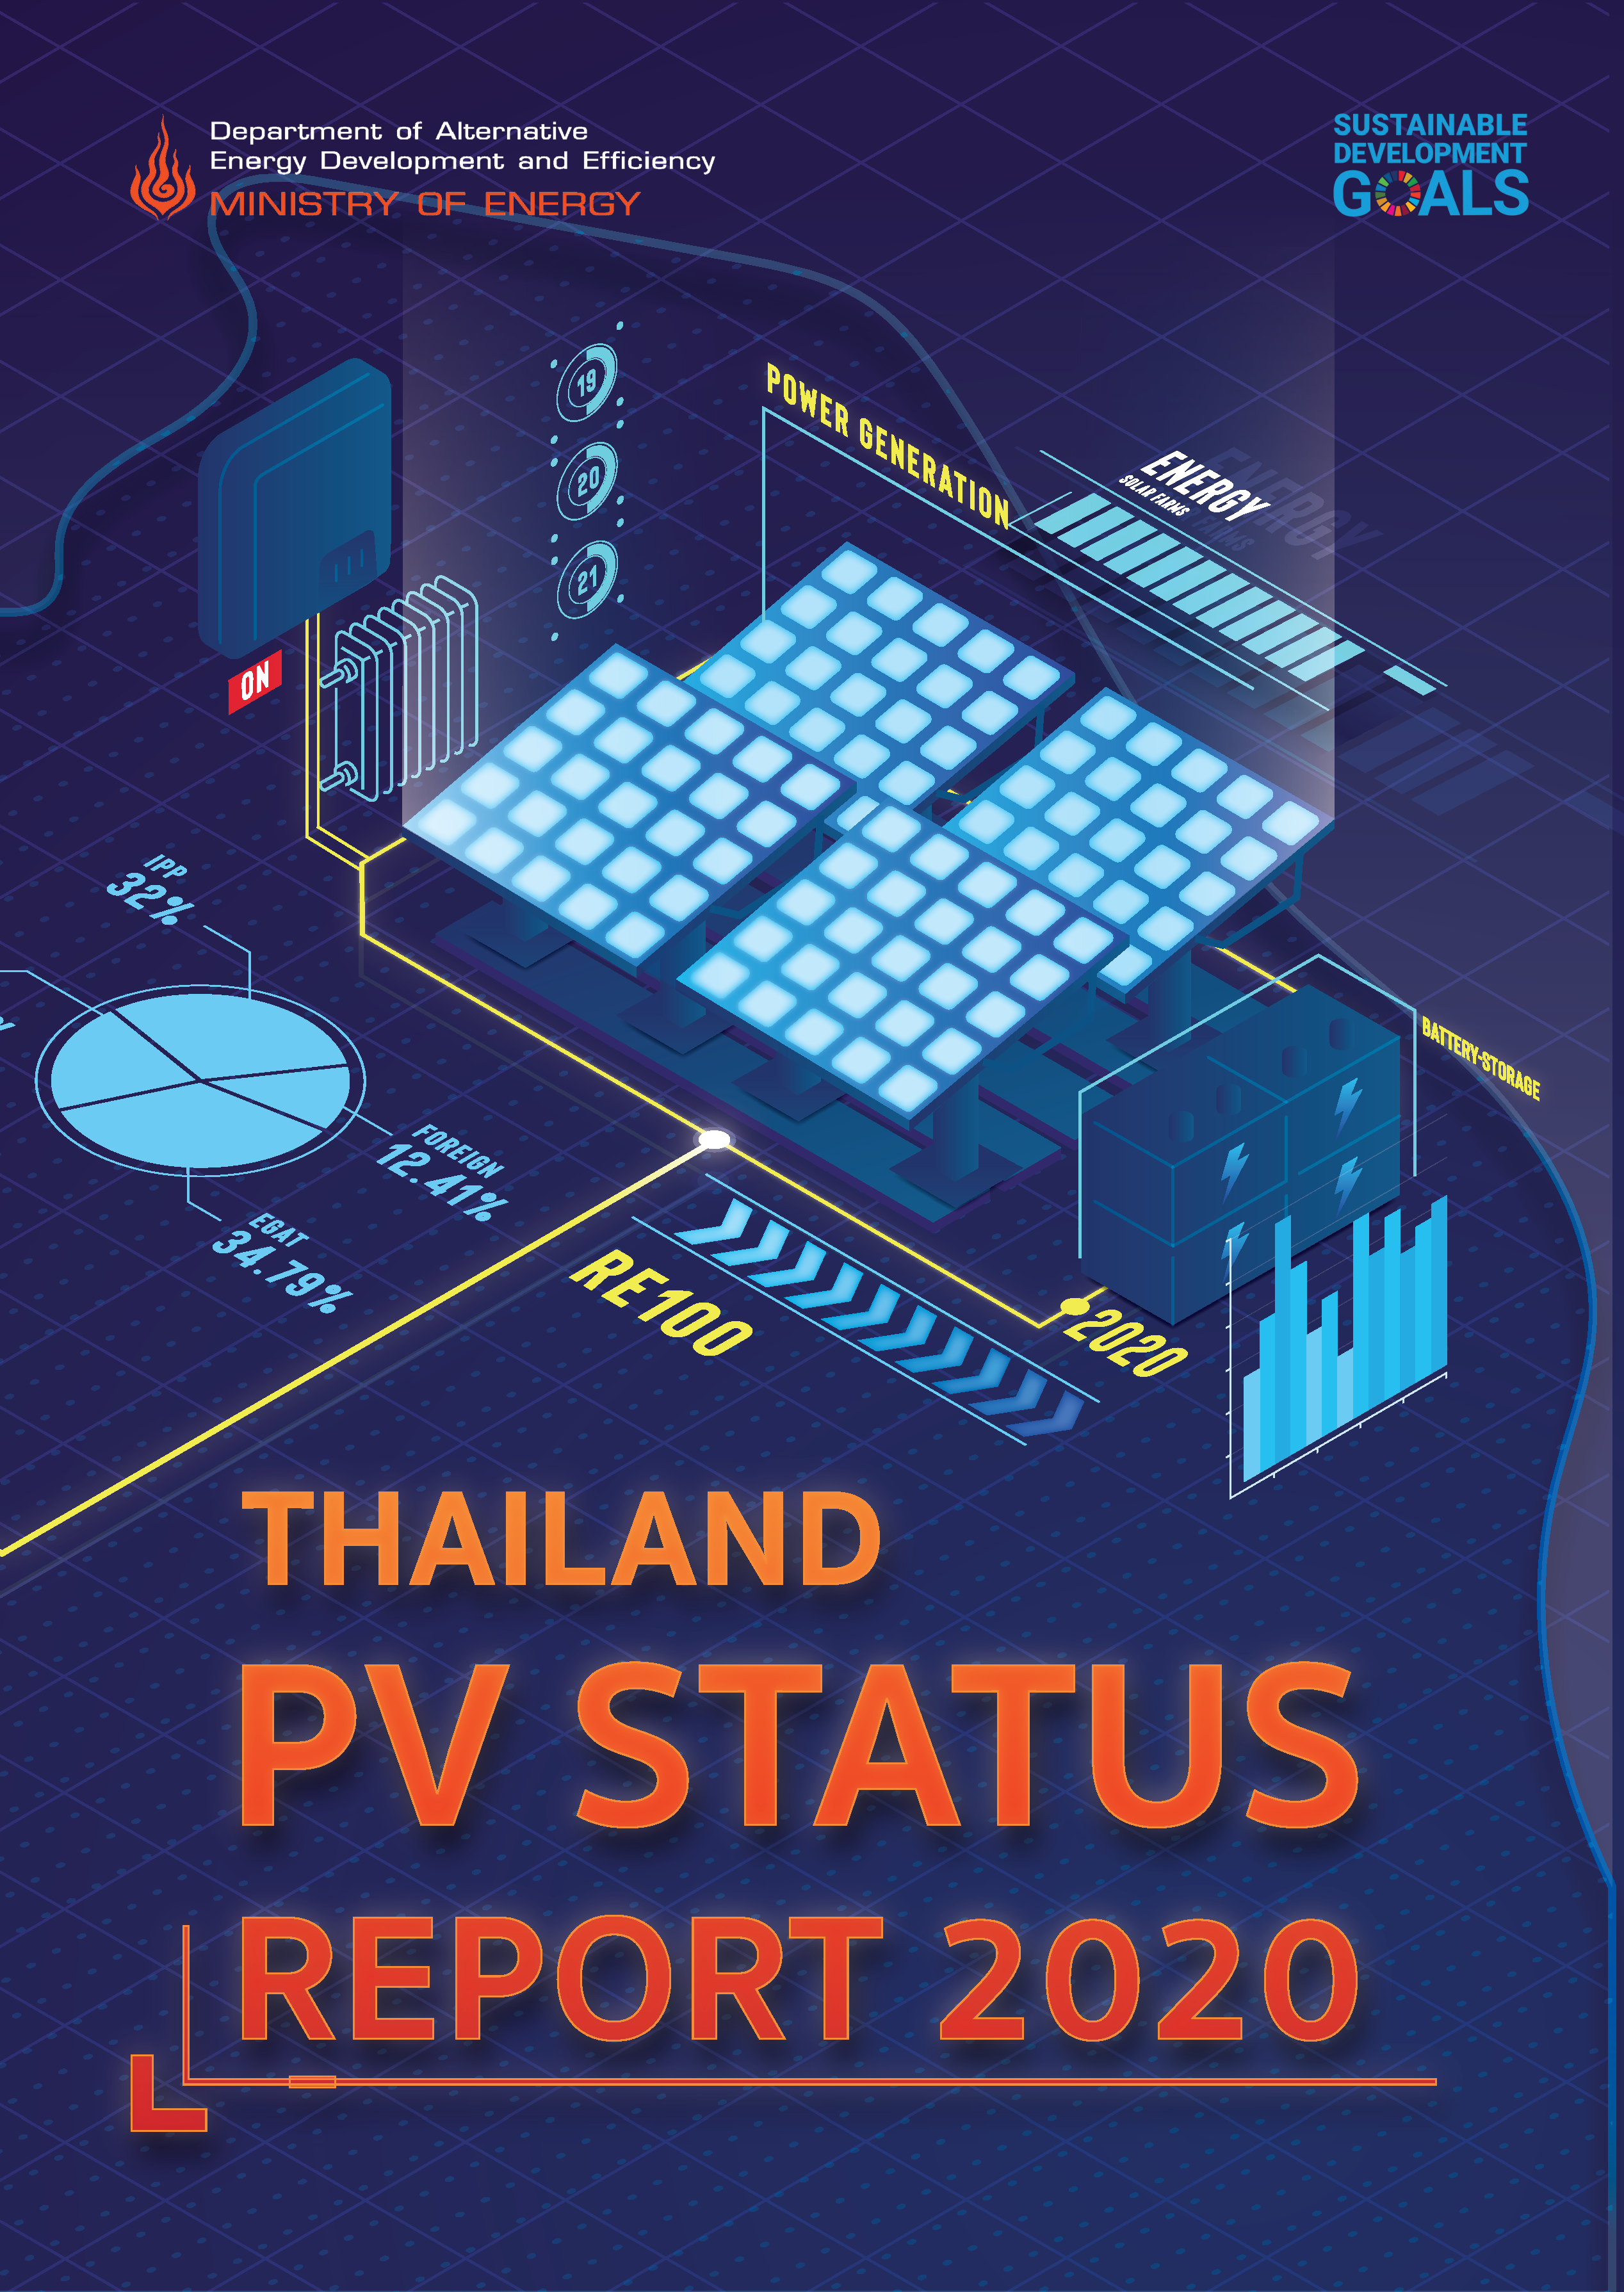 PV status report 2020